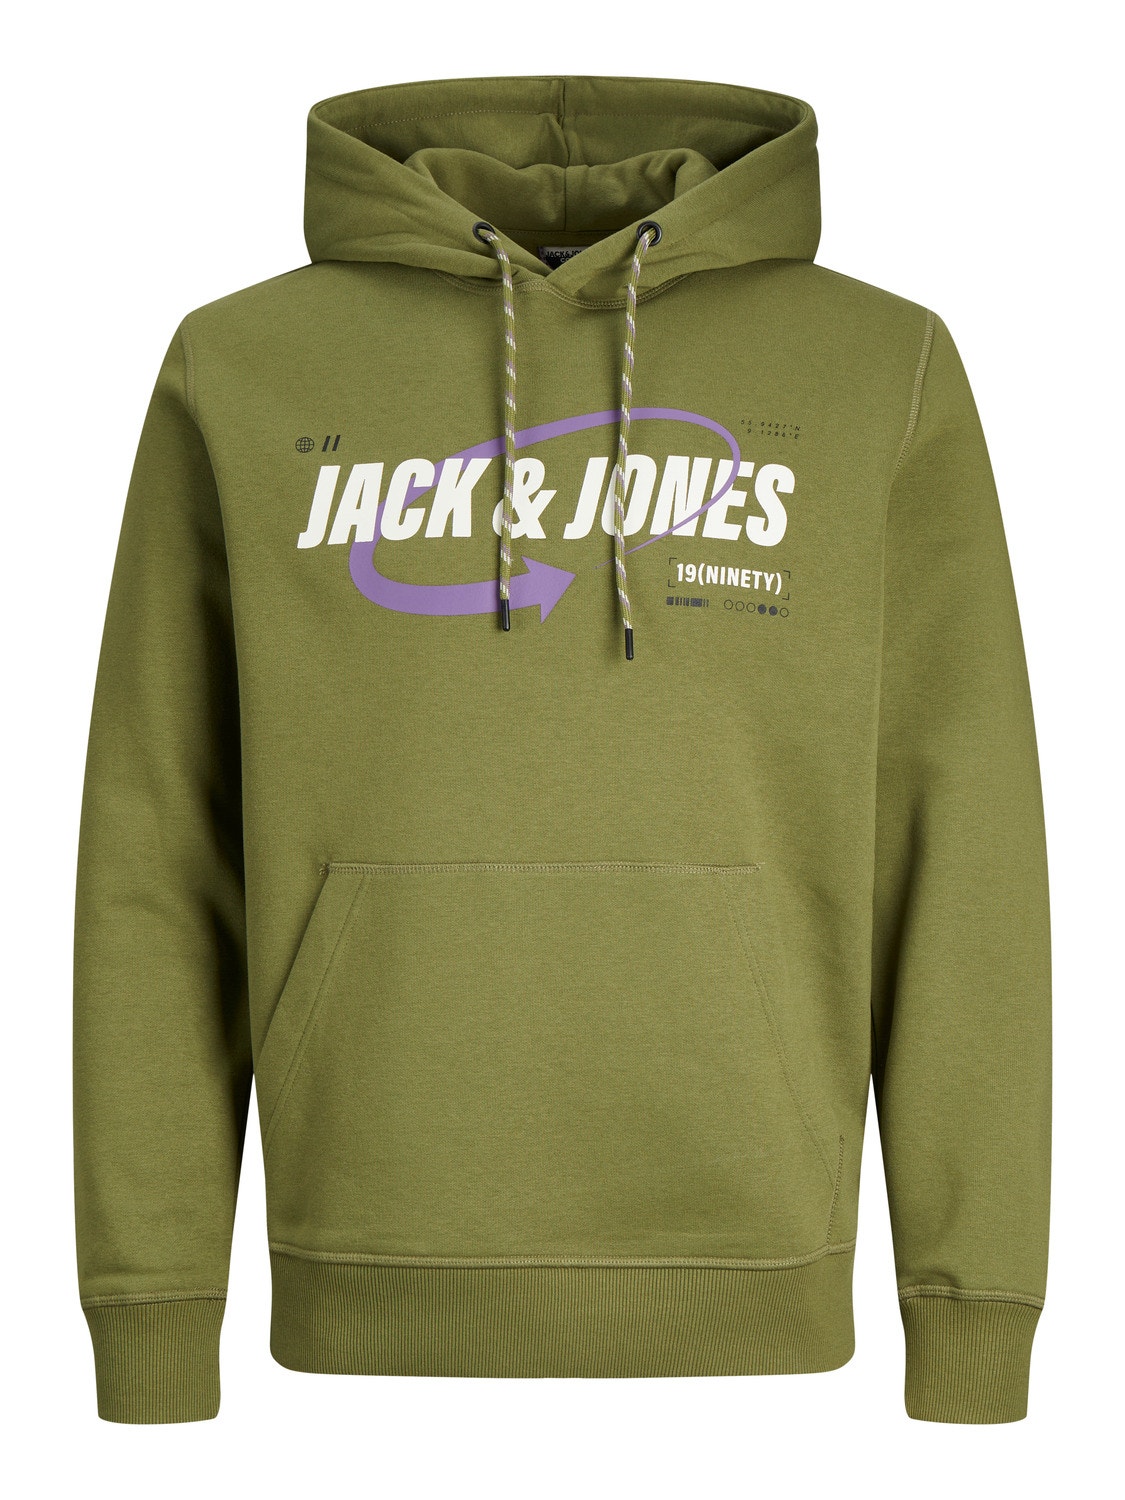 Jack & Jones Logo Kapuutsiga pusa -Olive Branch - 12245714